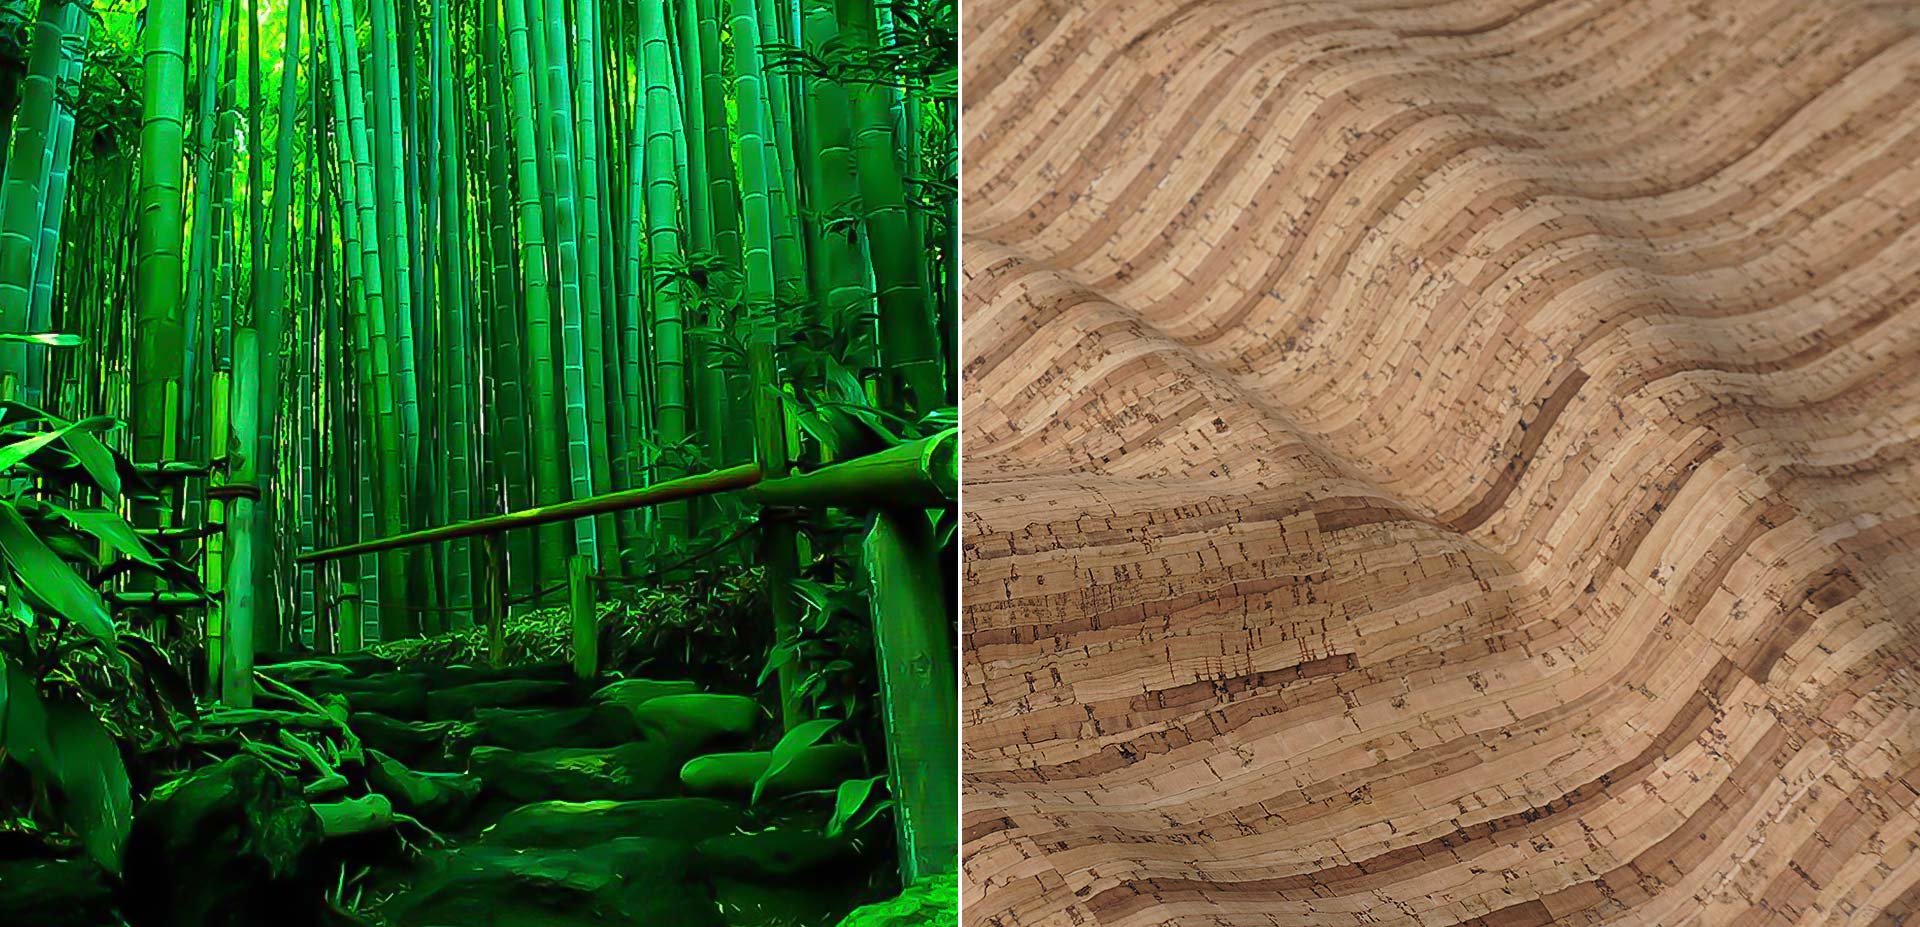 Bamboo aus der Kork Kollektion von ATN Kreative Produktionen